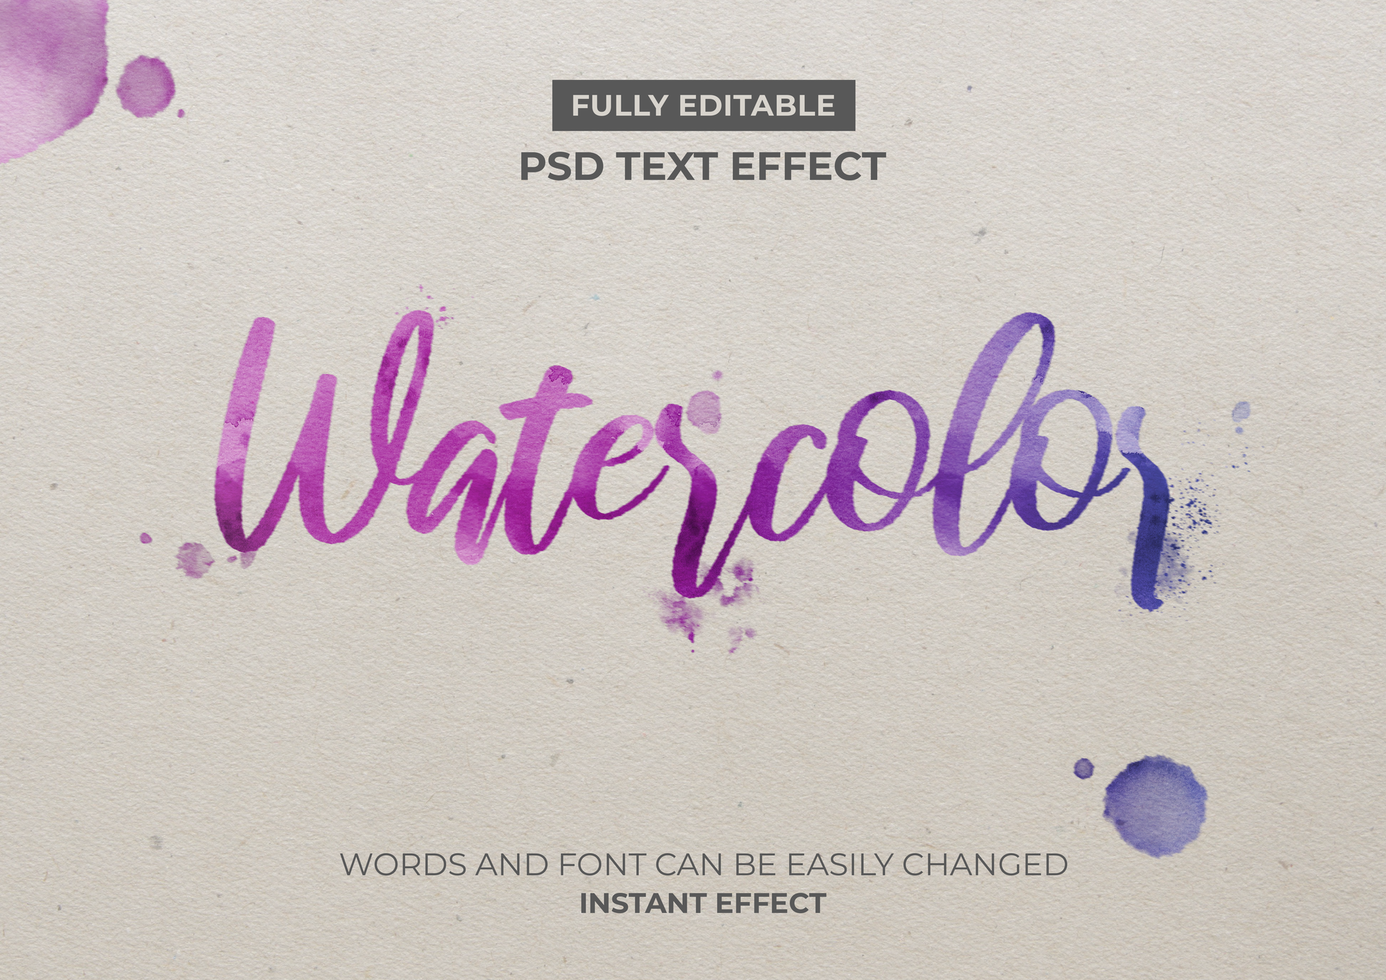 waterverf tekst effect psd